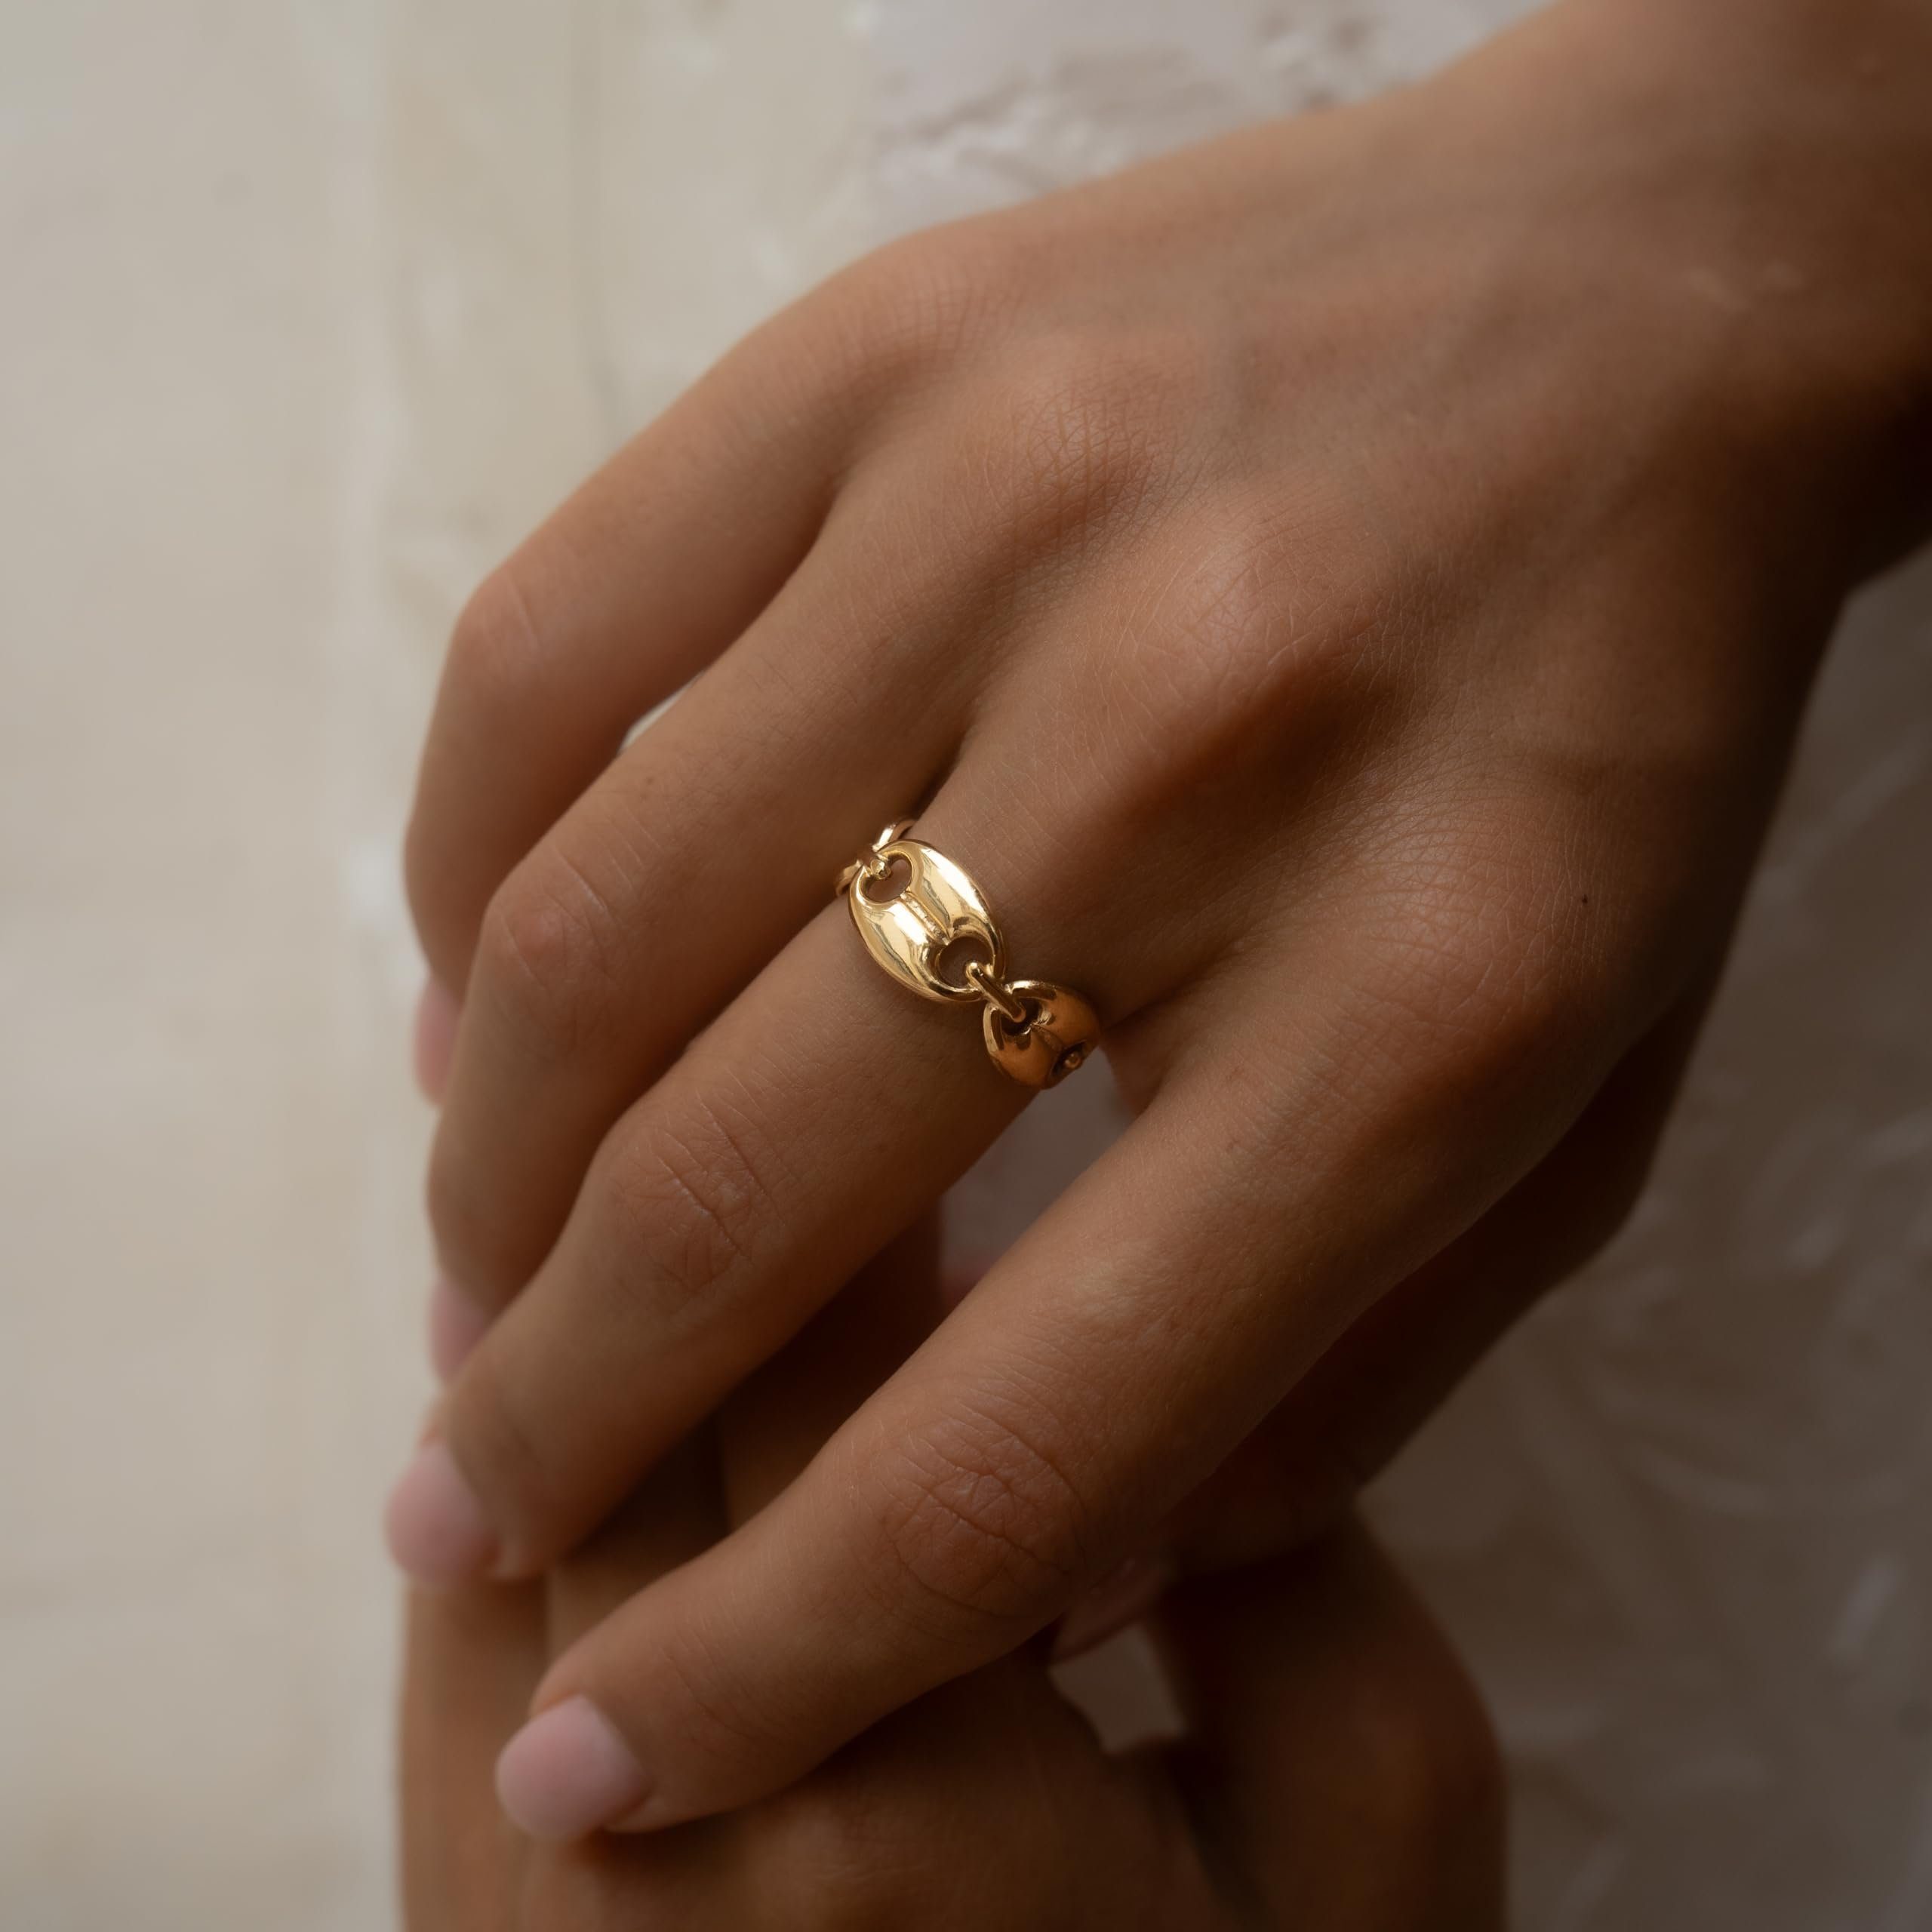 Made by Nami Fingerring Edelstahl Ring Gold mit mehreren verbundenen Gliedern, Damen Ювелирные изделия Größenverstellbar & Wasserfest